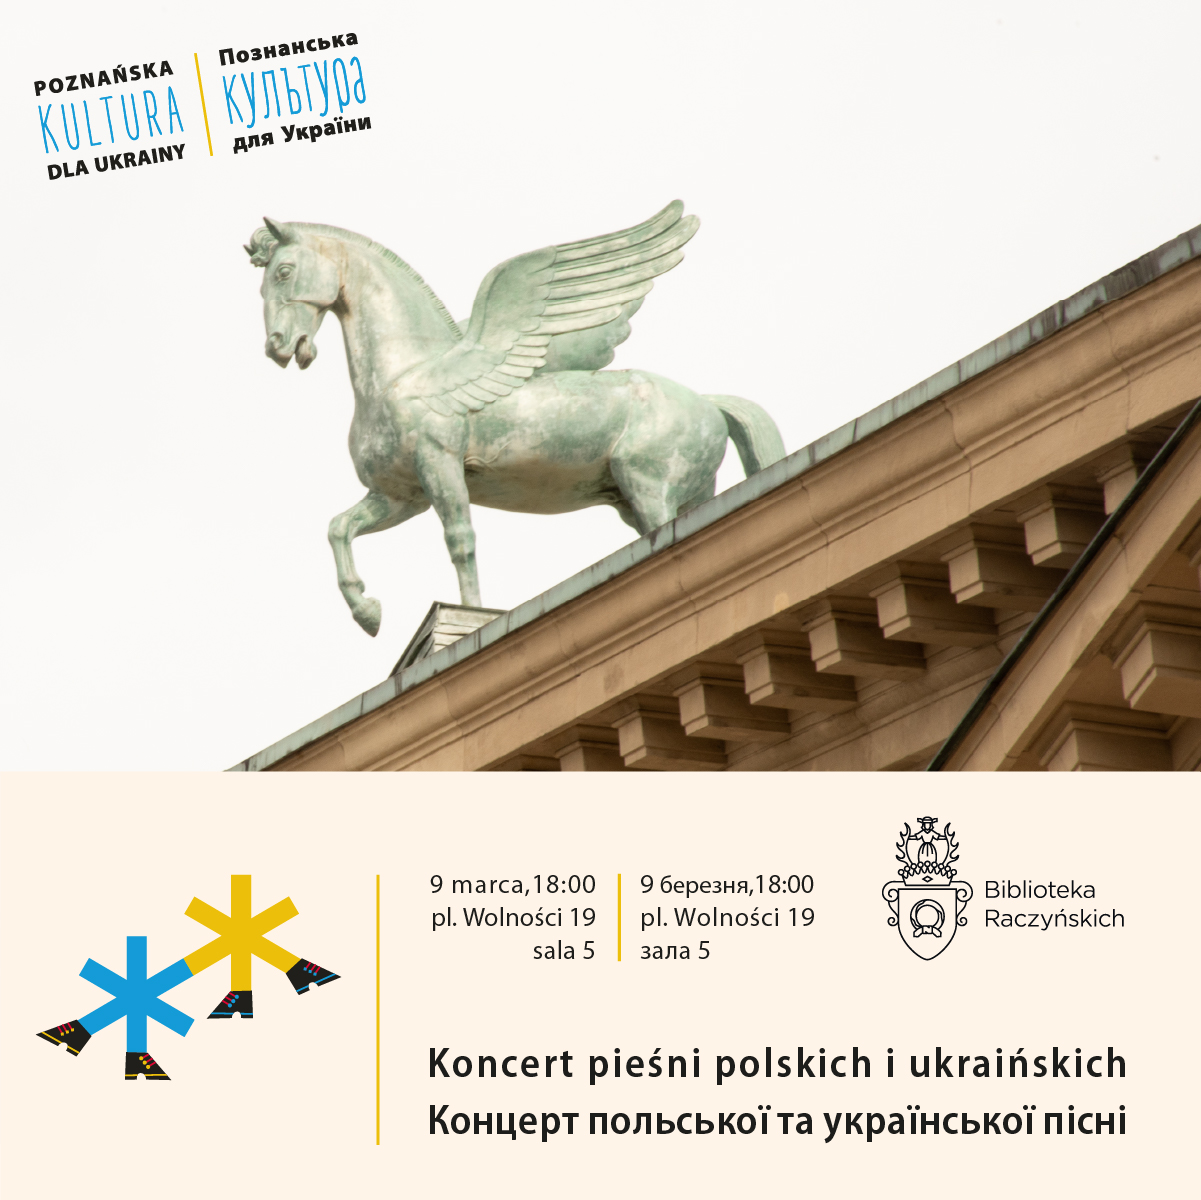 Na zdjęciu widać fragment dachu budynku poznańskiej opery i figurę pegaza.